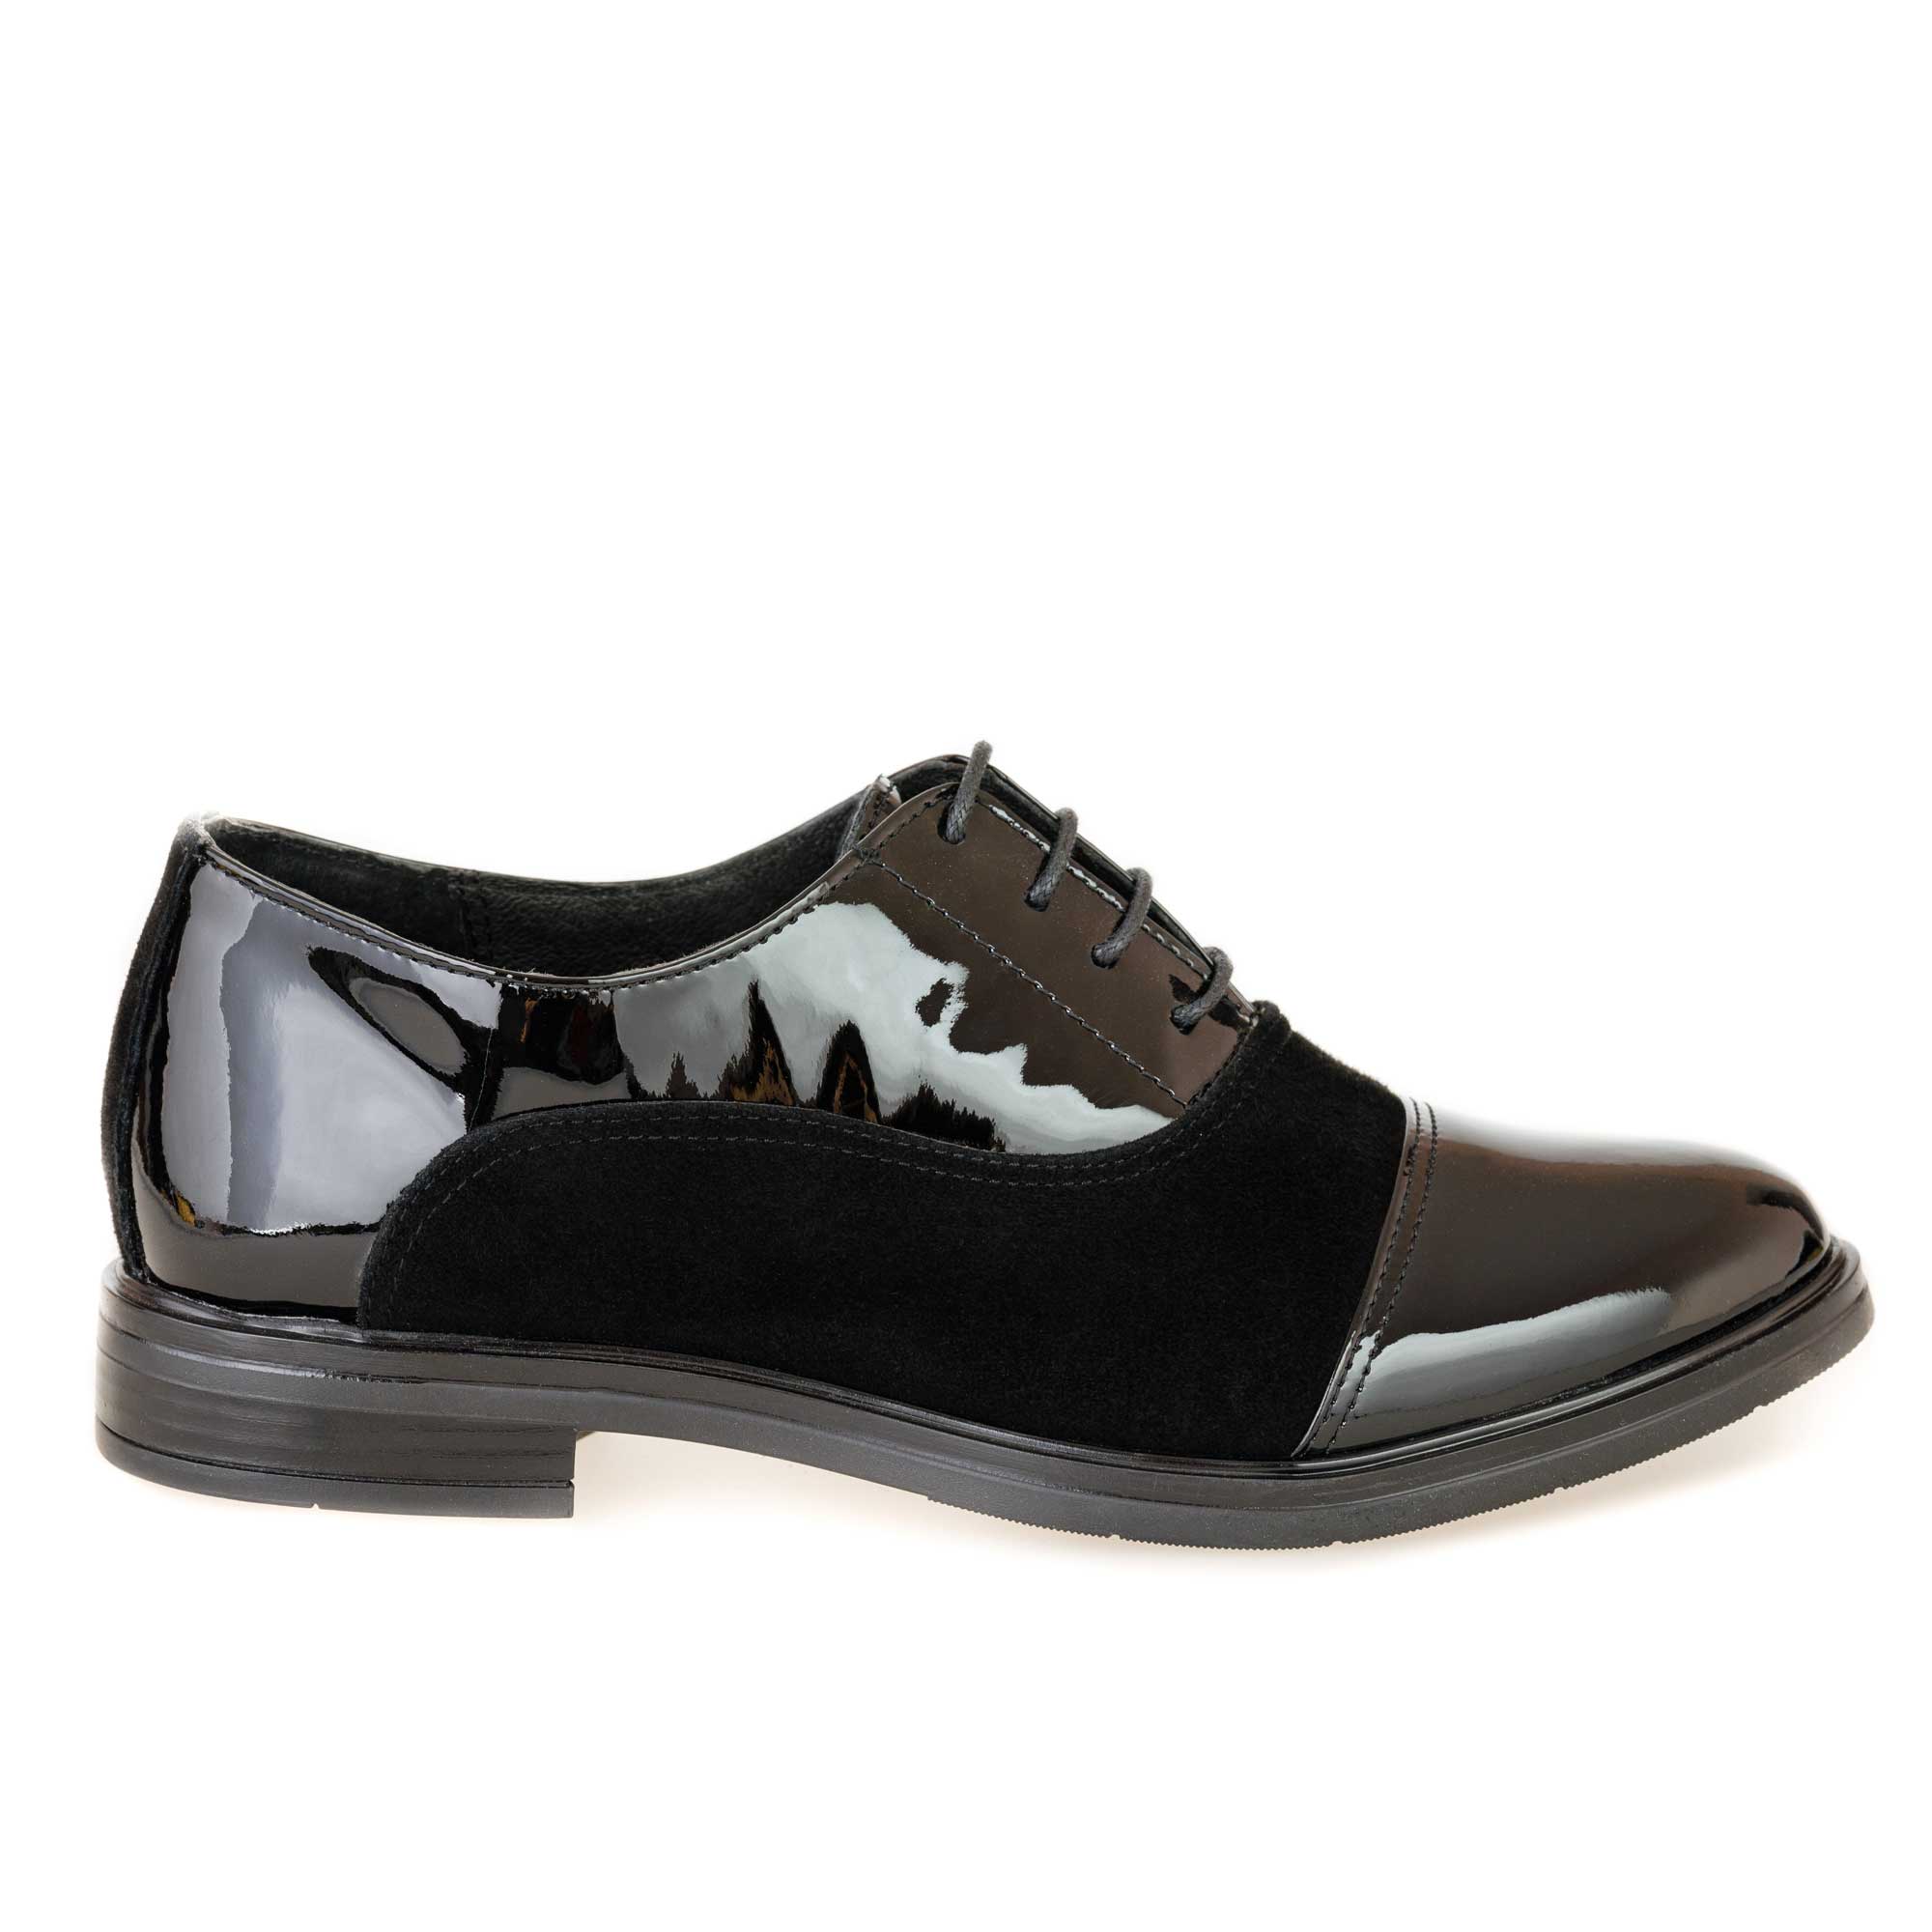 Pantofi damă din piele naturală Oxford Negru 101S-NLv